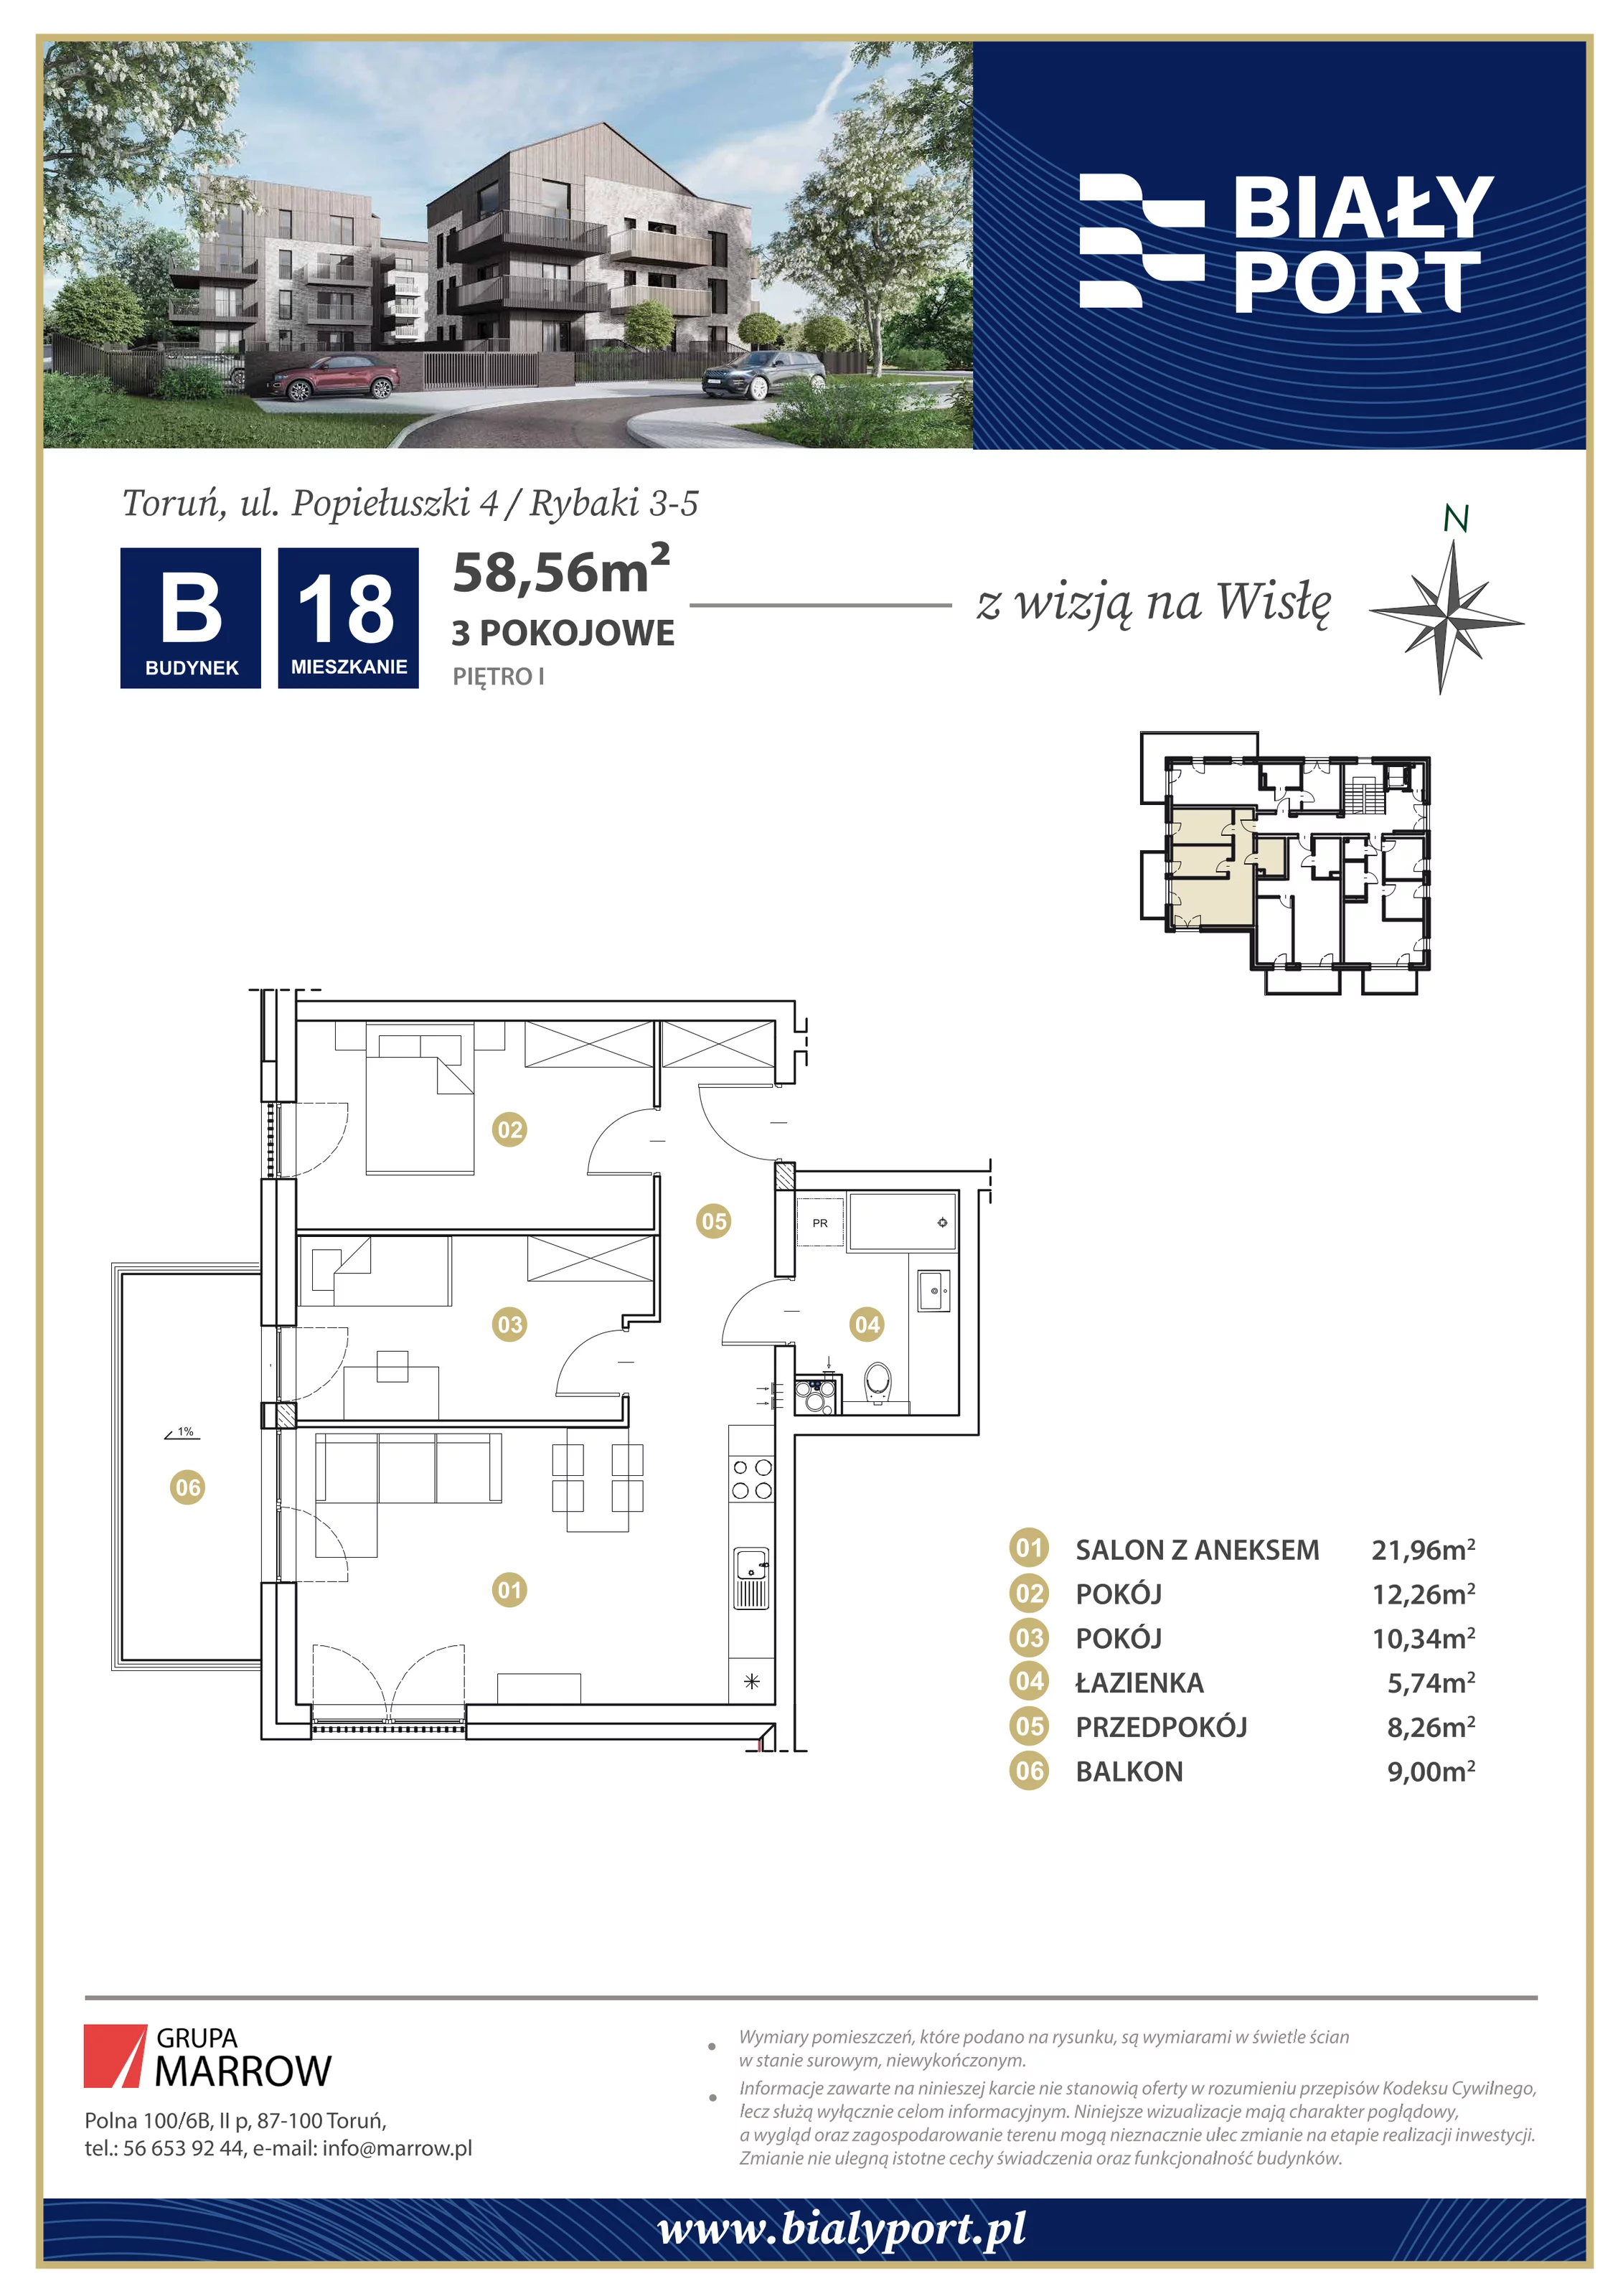 Mieszkanie 58,56 m², piętro 1, oferta nr 18, Biały Port, Toruń, Rybaki, ul. Popiełuszki 4